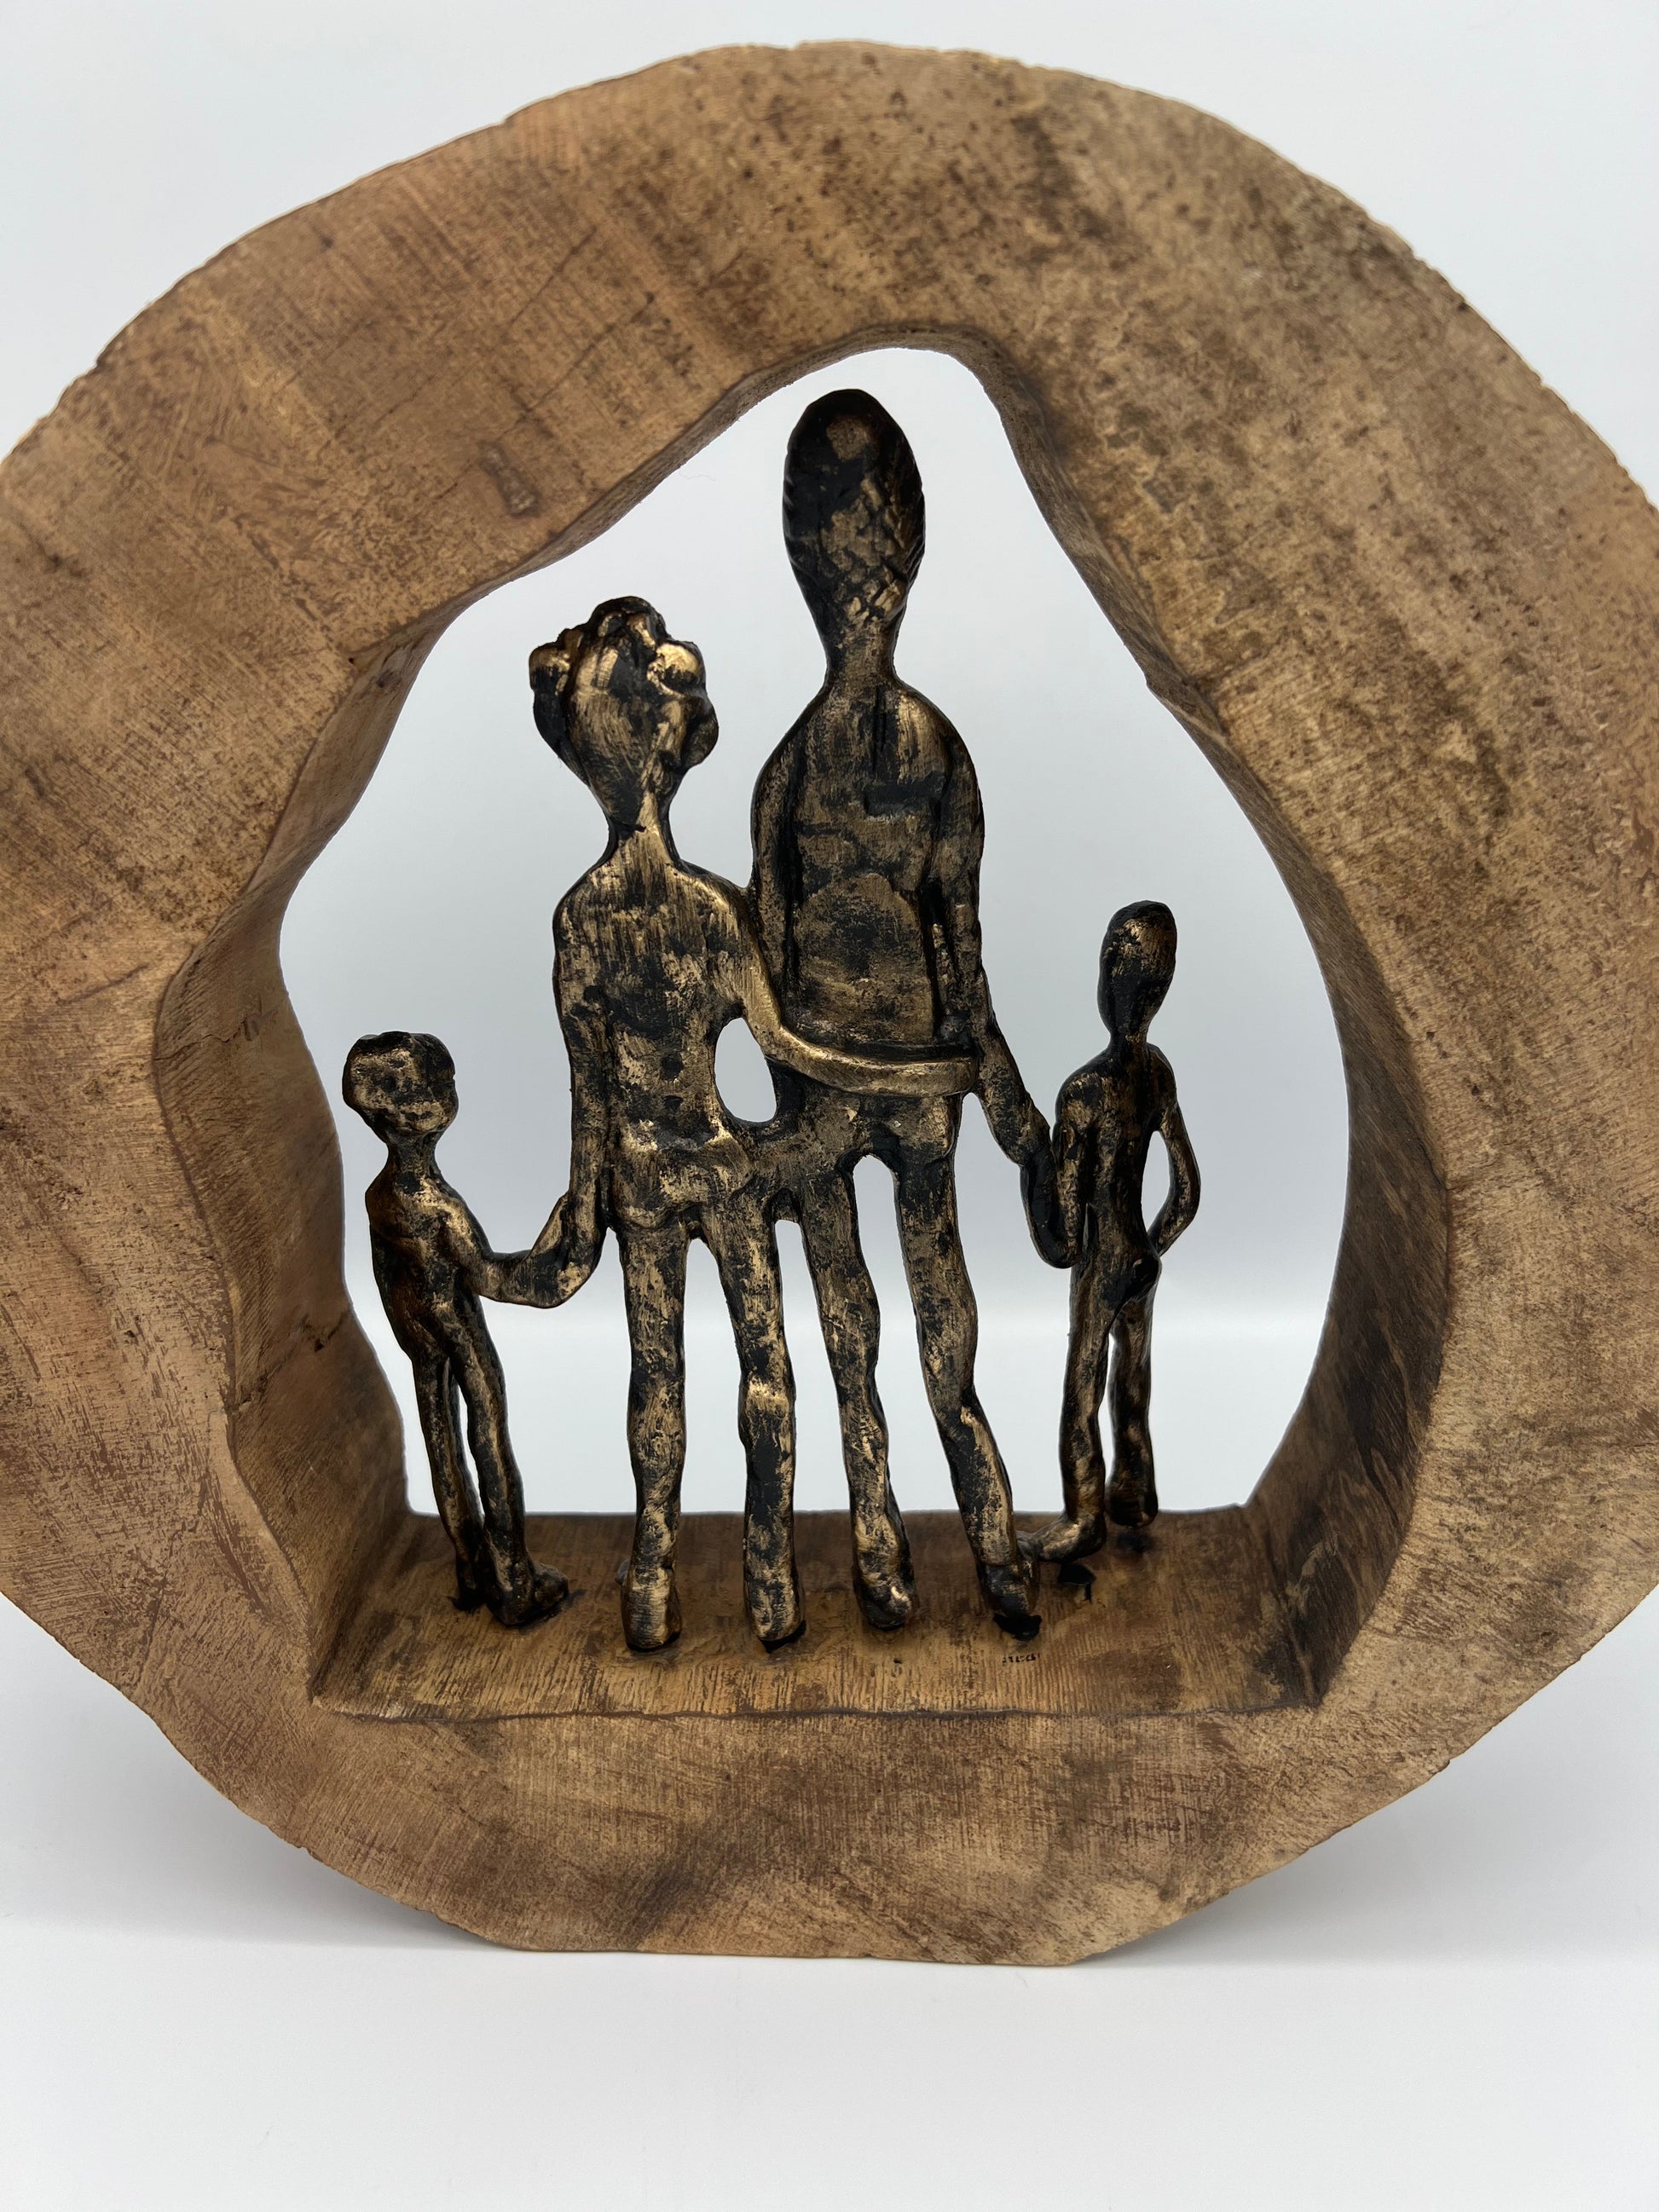 FAMILY - Statuette d'un couple et deux enfants dans une structure en bois statuette B&Inside 